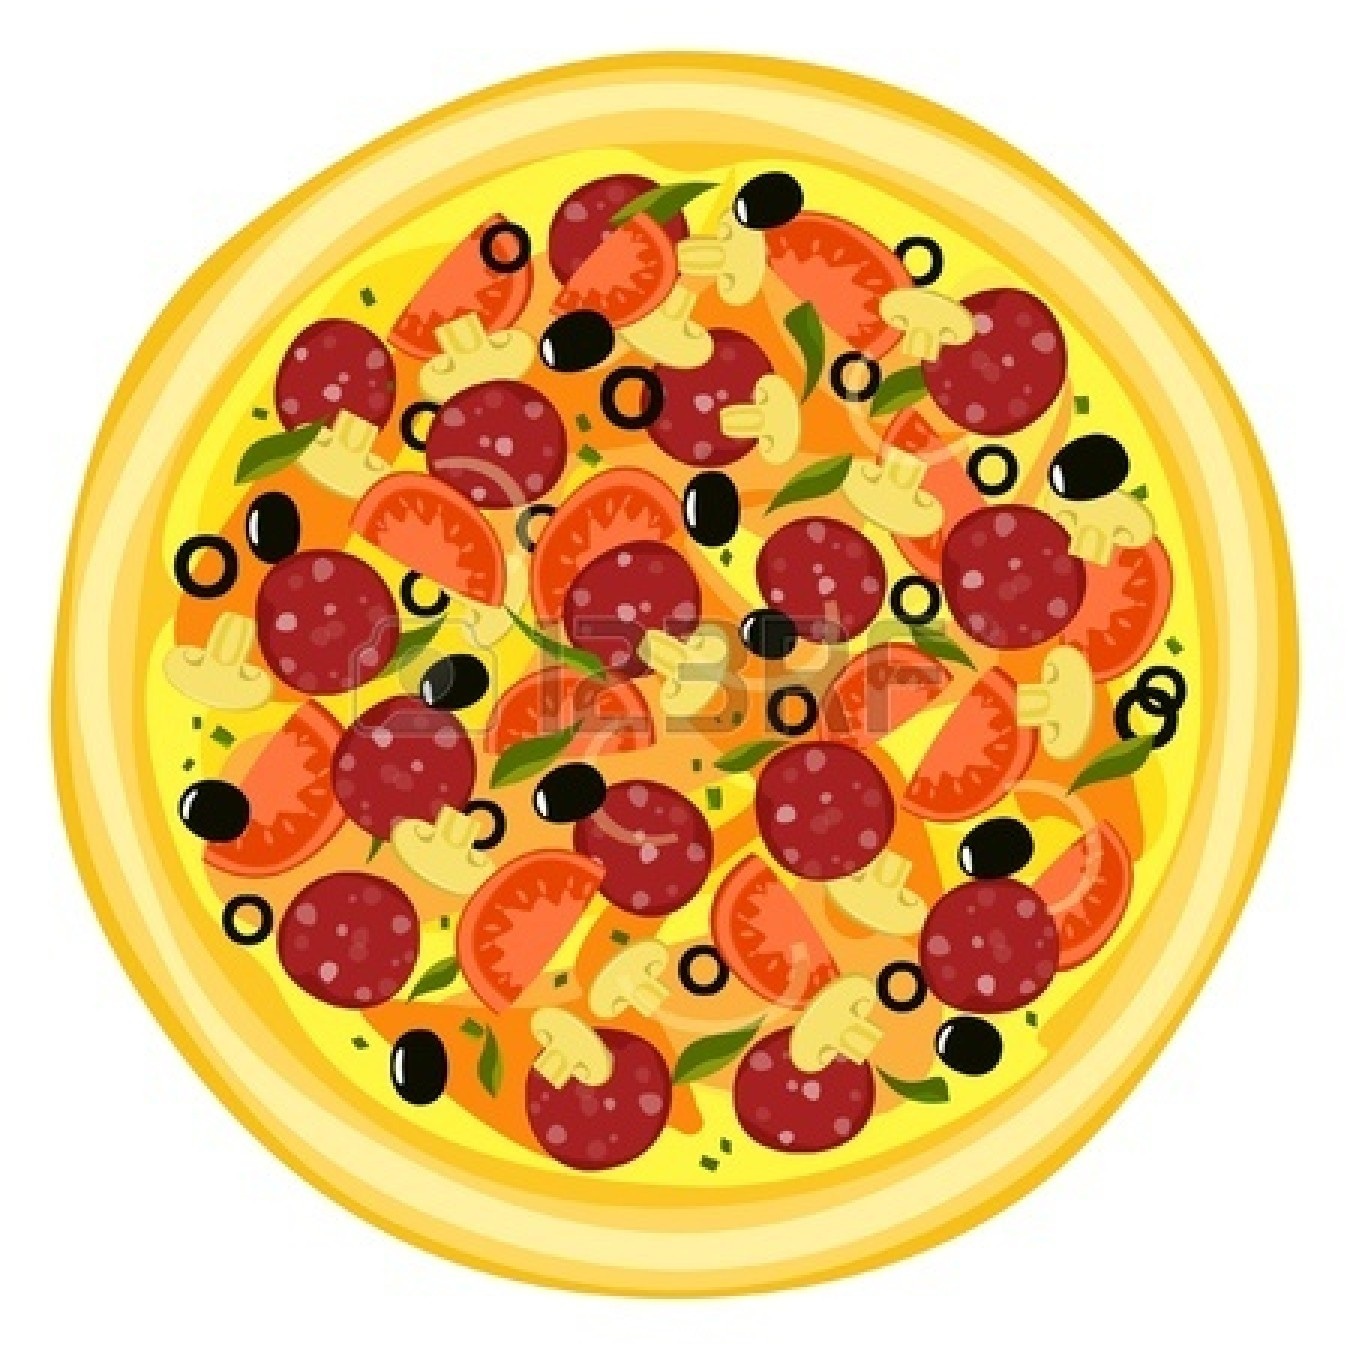 ... Pizza - Vector illustrati